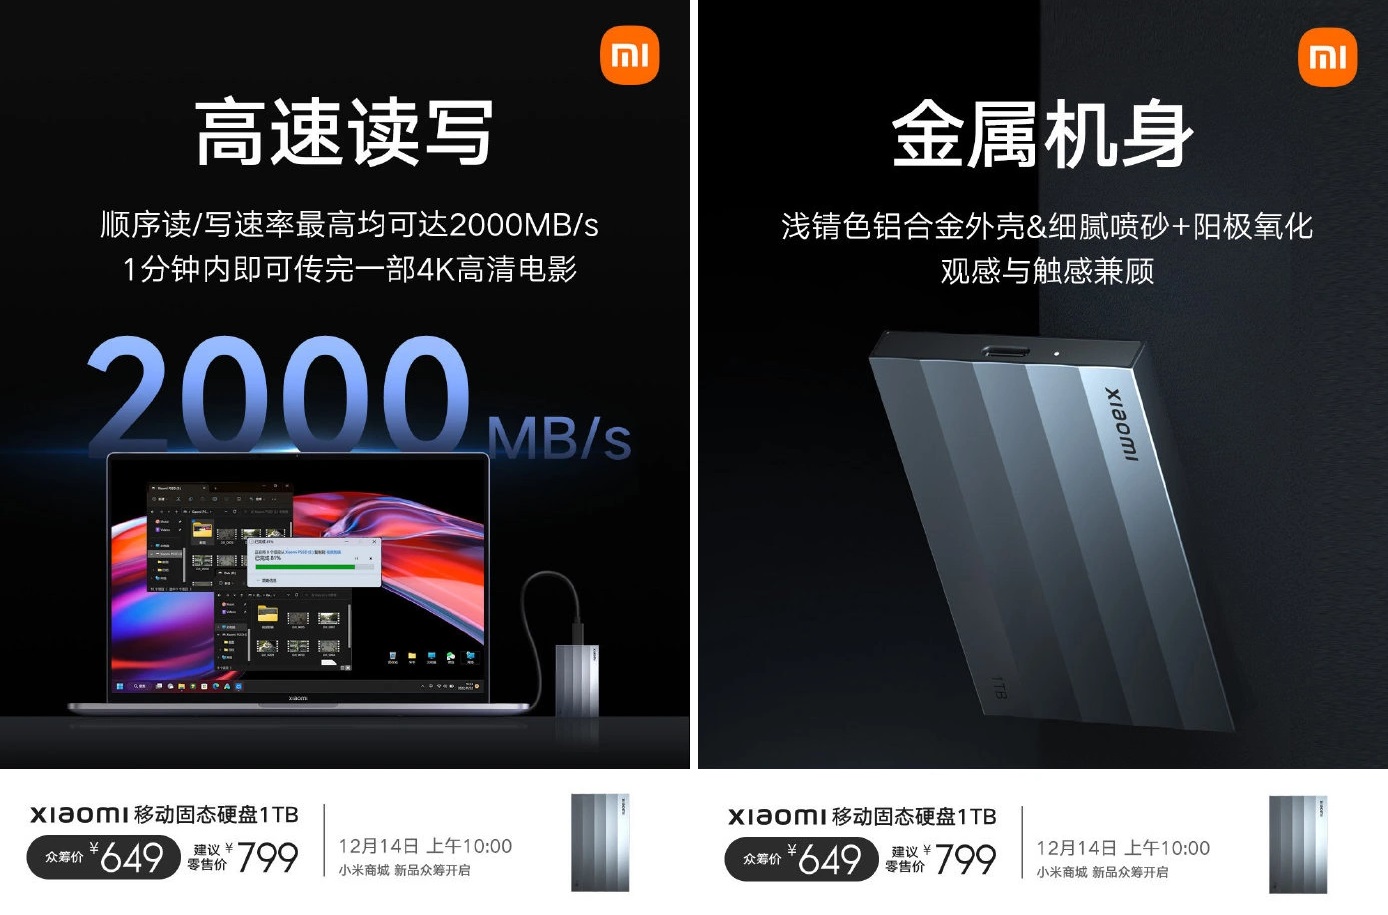 Xiaomi hat eine 1TB SSD für Smartphones und Computer vorgestellt